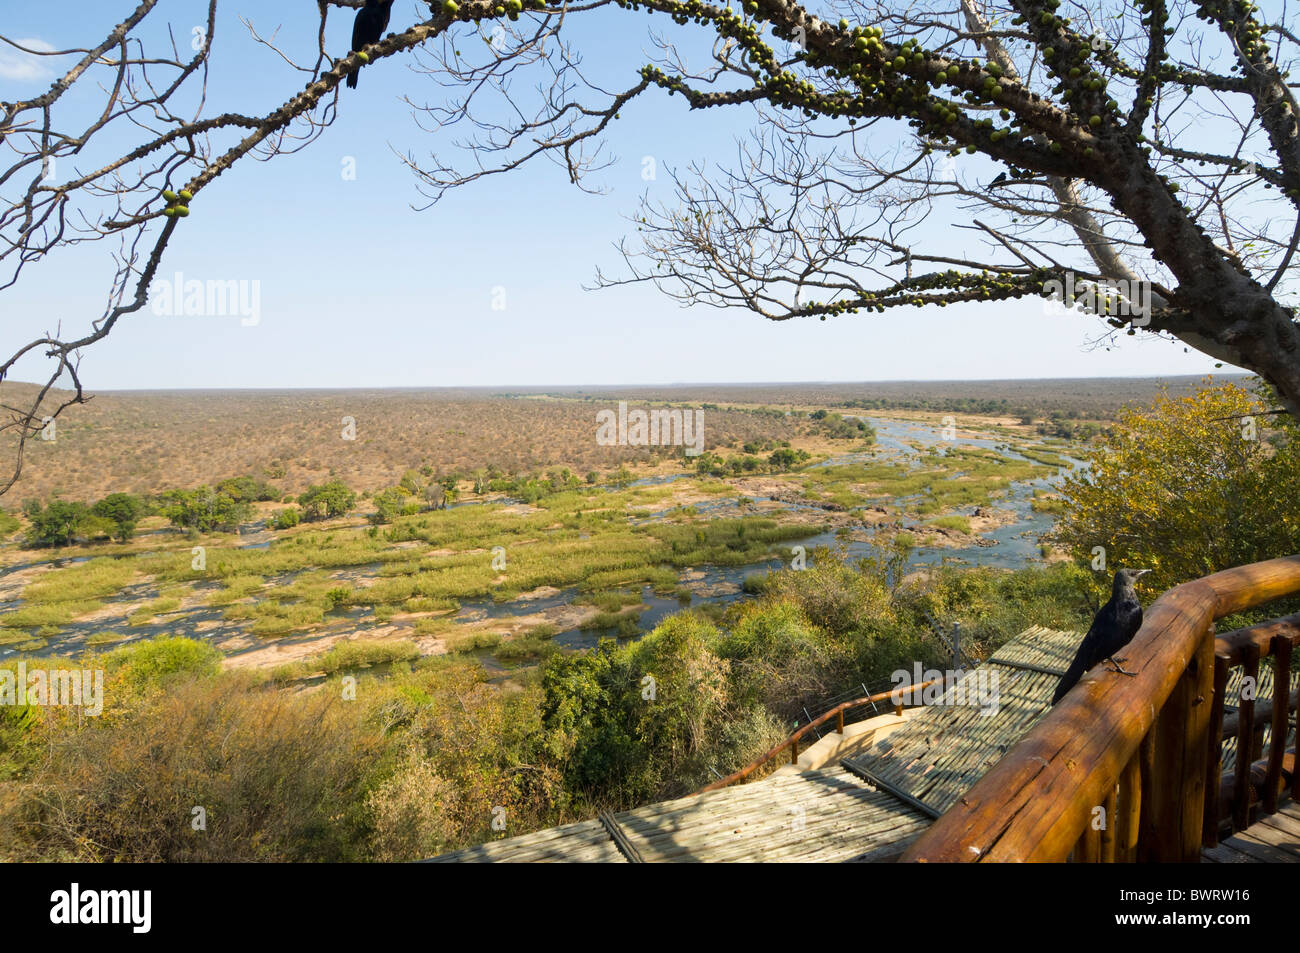 Olifants Rest Camp Kruger National Park South Africa Stock Photo